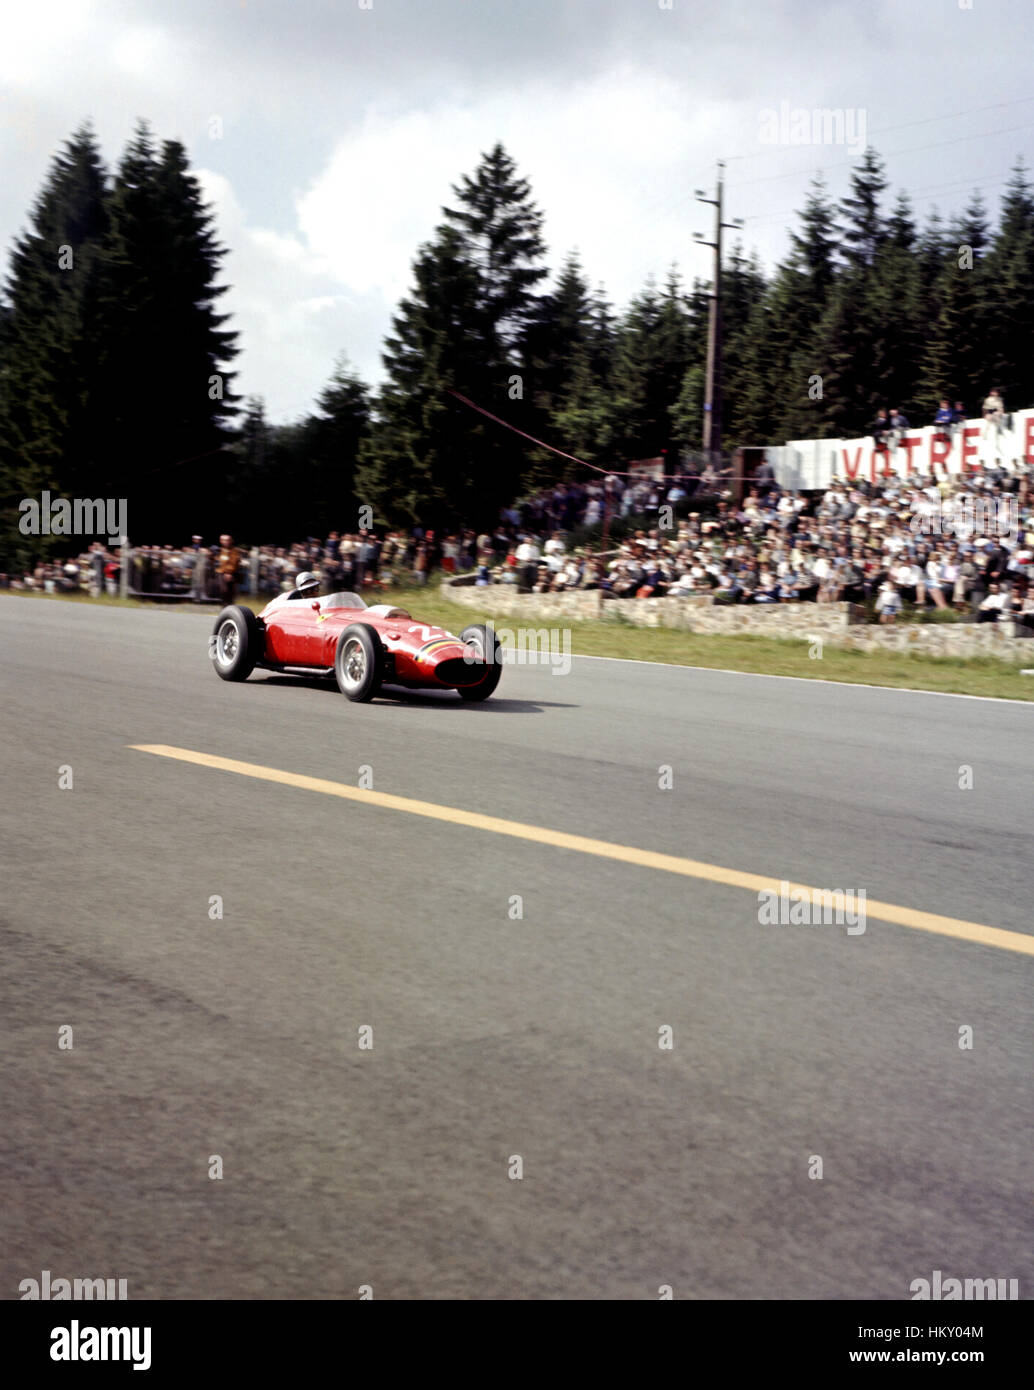 1960 Willy Mairesse belga 246 Ferrari Dino Spa GP belga dnf GG Foto Stock